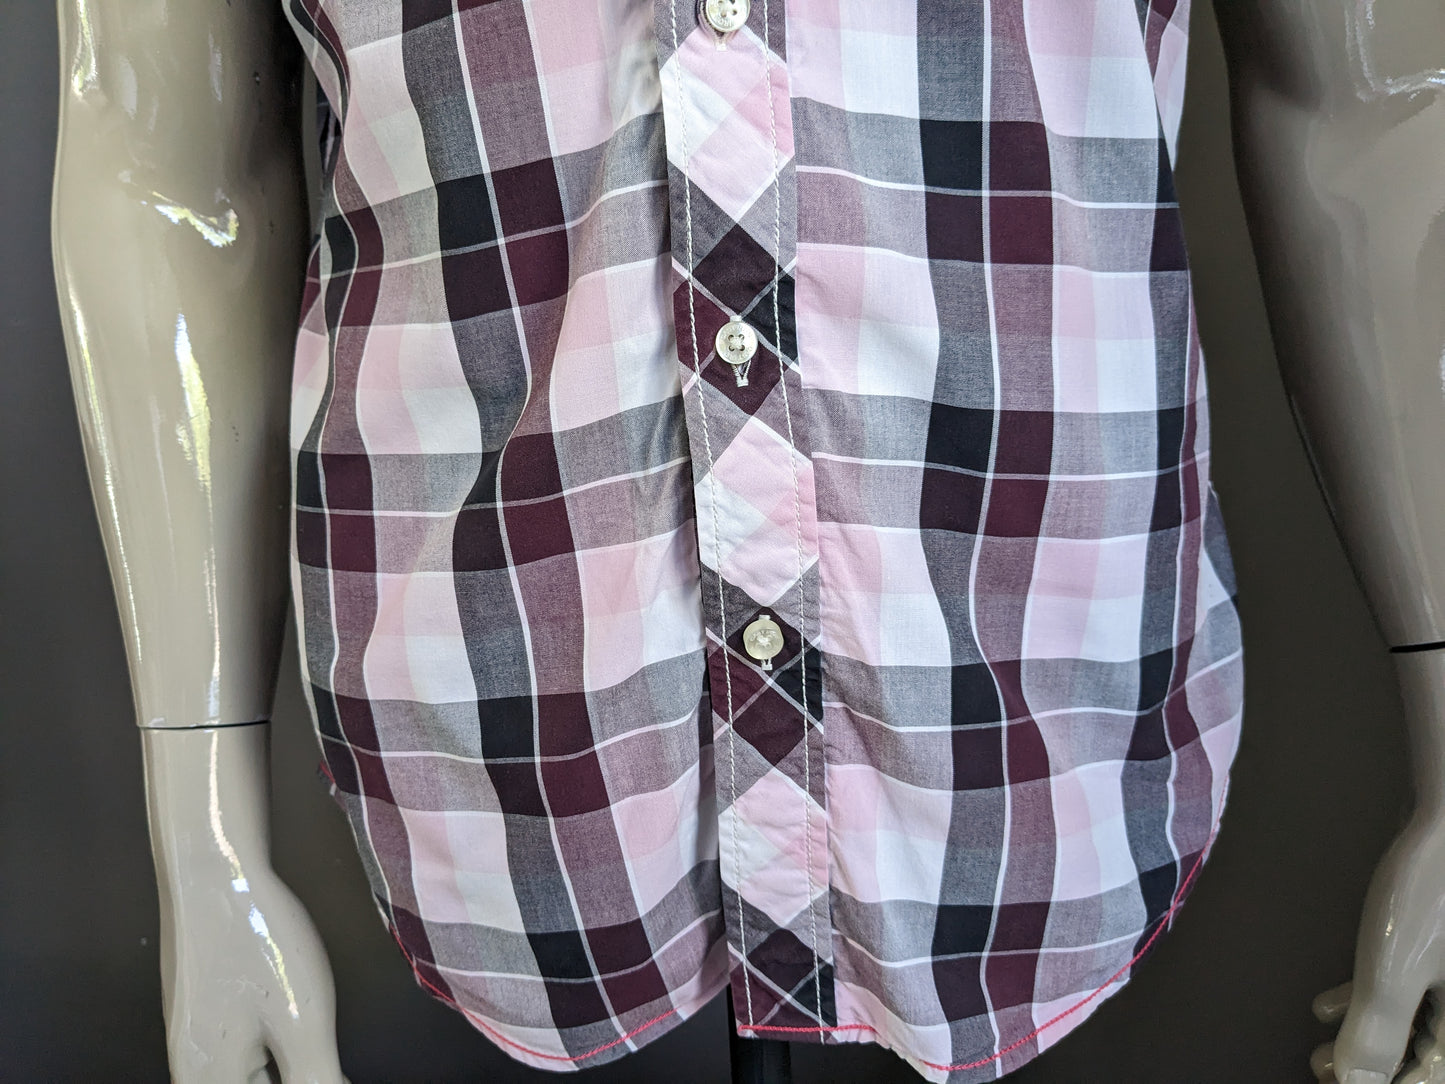 Camisa de hierro fundido manga corta y cuello doble. Purple rosa blanco y negro a cuadros. Tamaño xl.